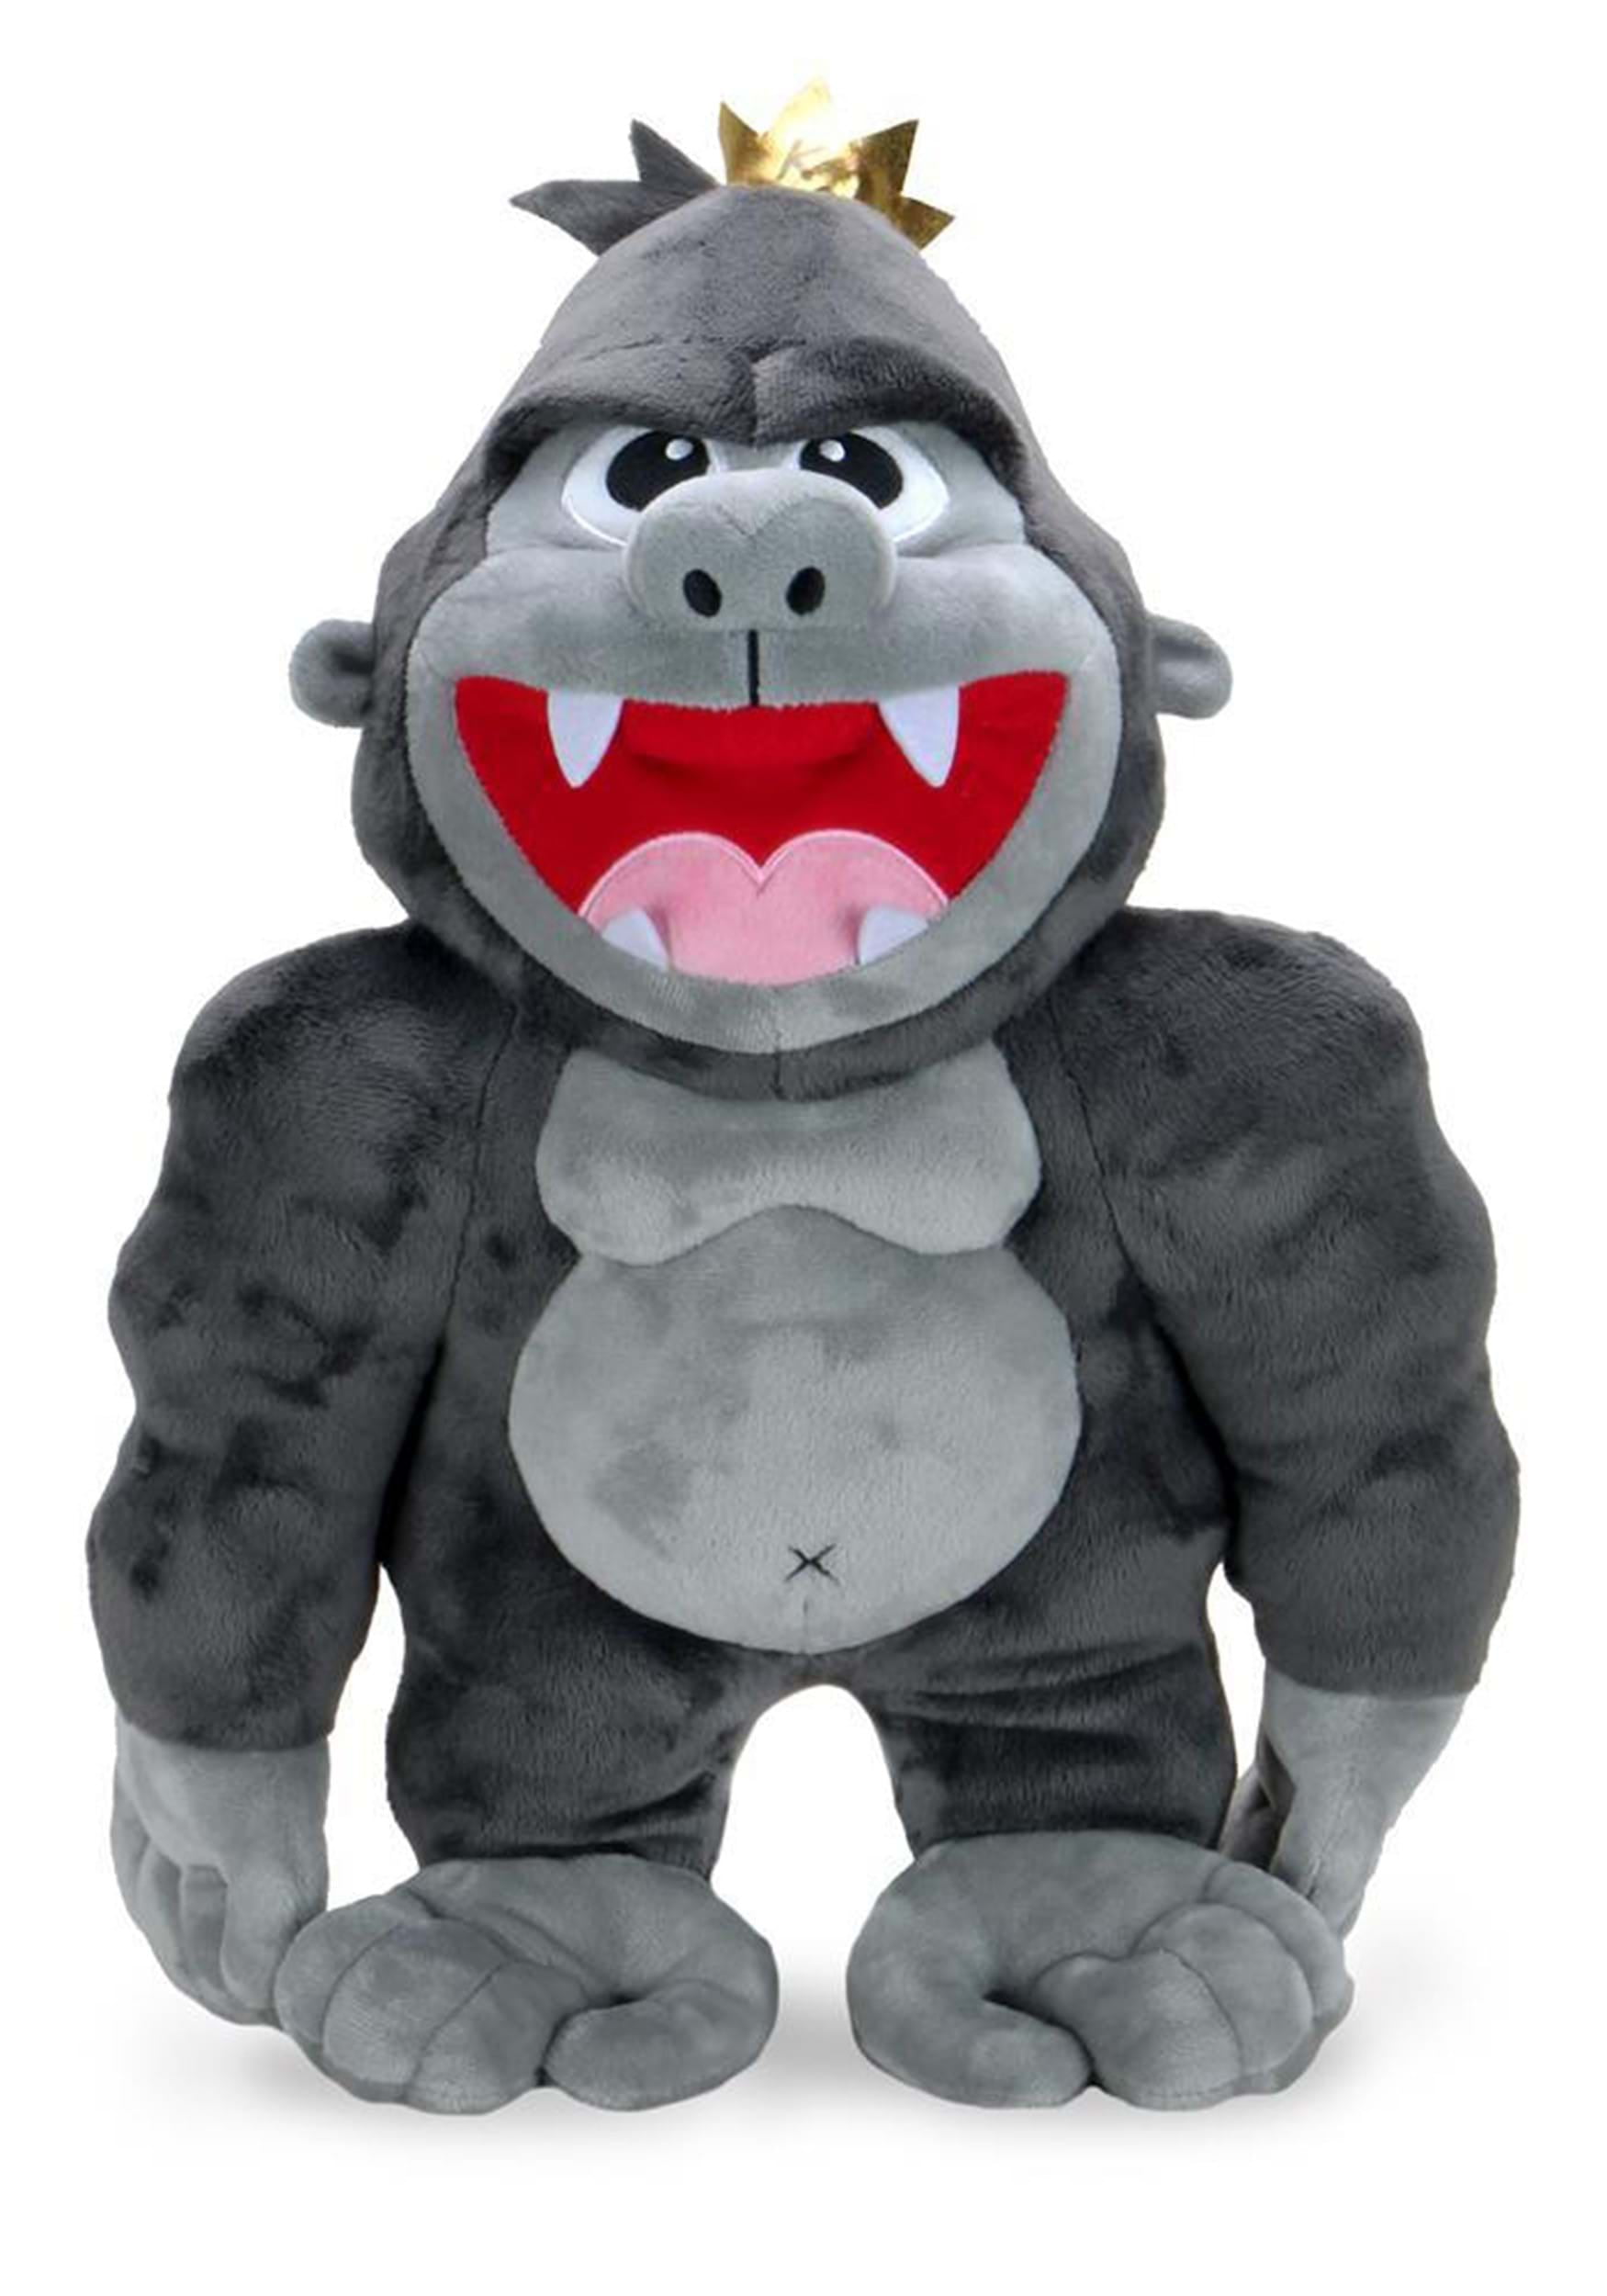 Phunny King Kong Plush (HugMe, Vibrates!) 